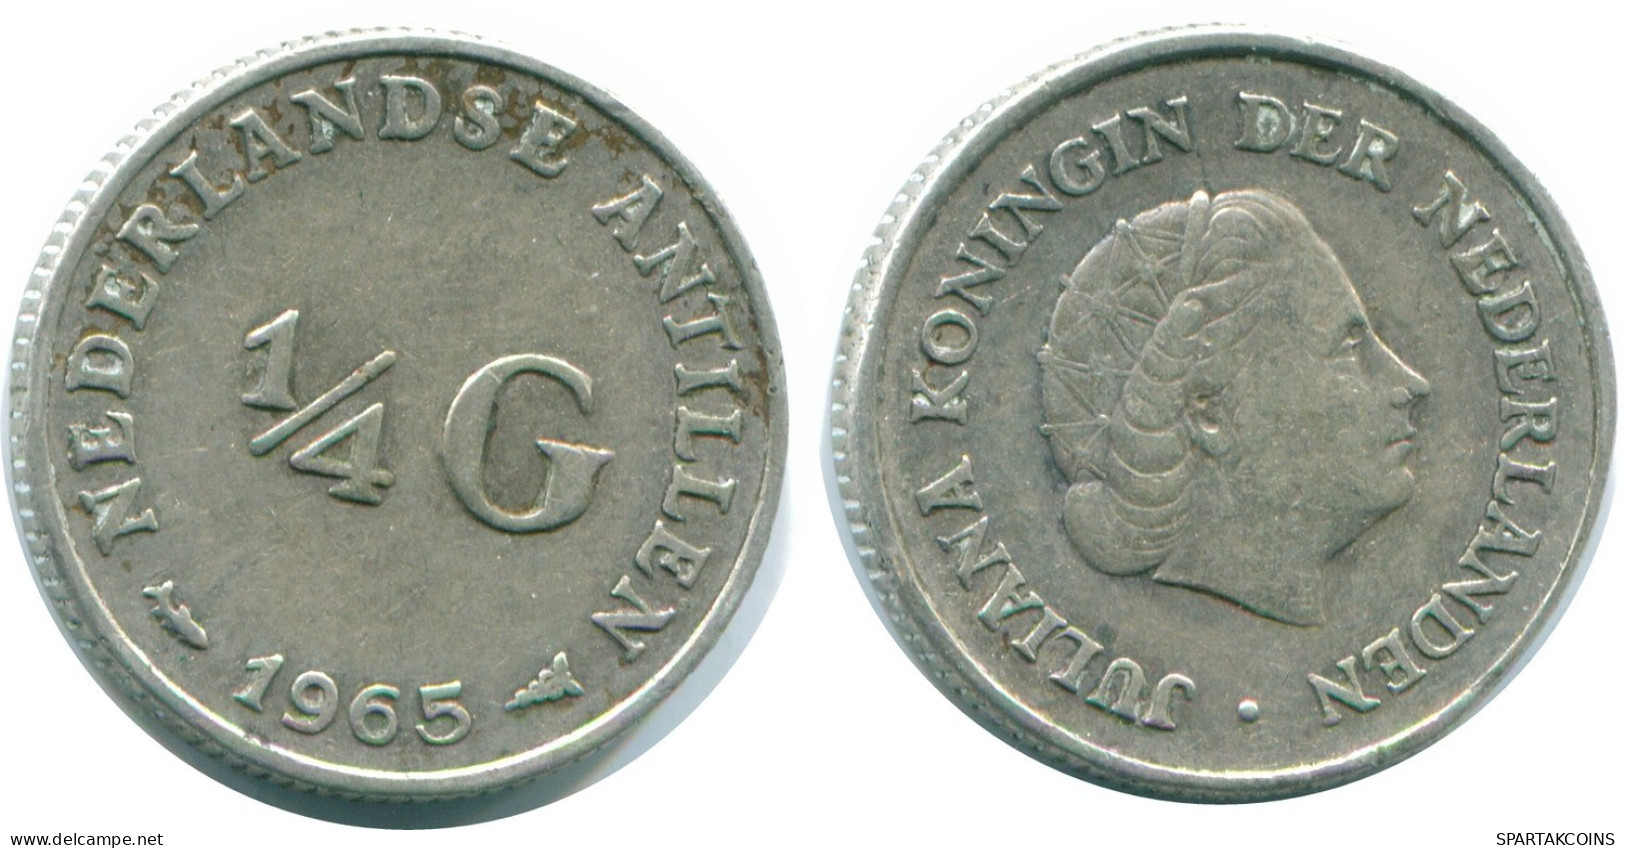 1/4 GULDEN 1965 NIEDERLÄNDISCHE ANTILLEN SILBER Koloniale Münze #NL11390.4.D.A - Antille Olandesi